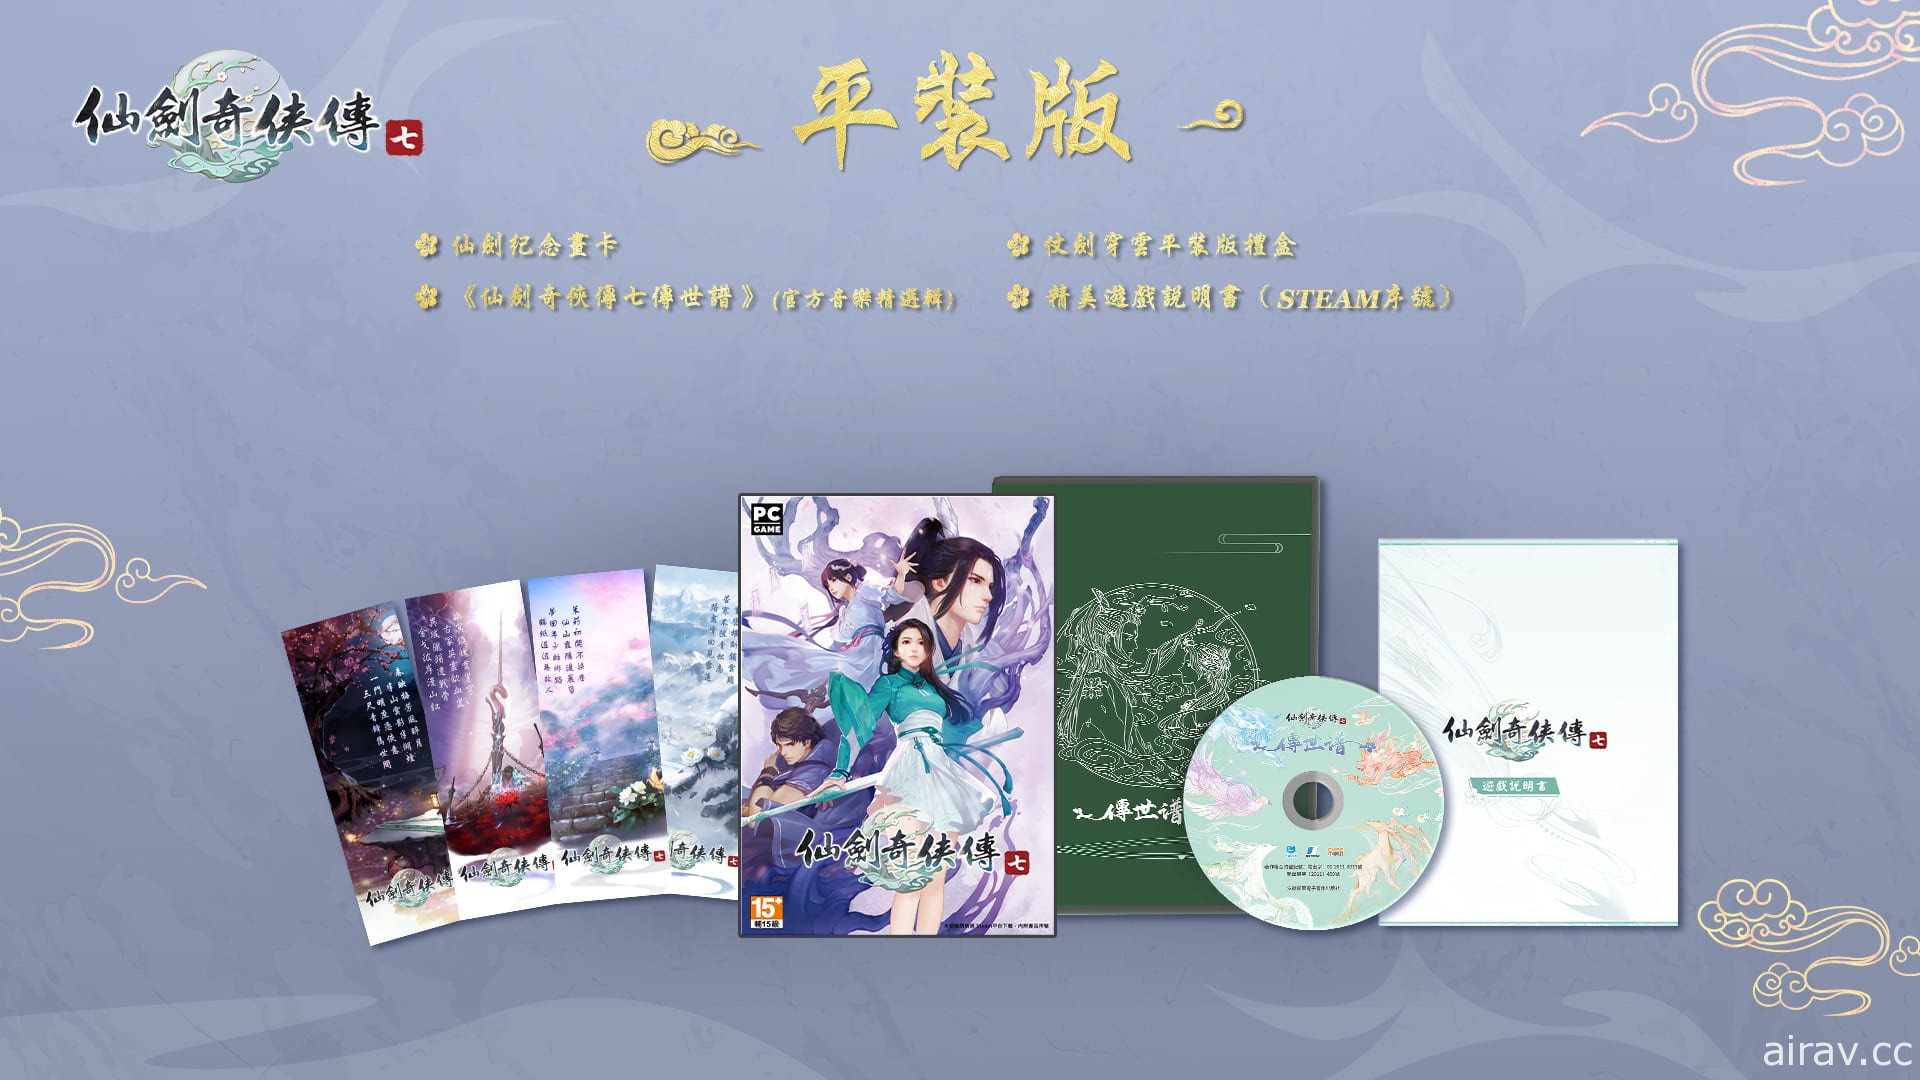 《仙剑奇侠传七》宣布 10 月 22 日上市 公开繁体中文实体产品内容